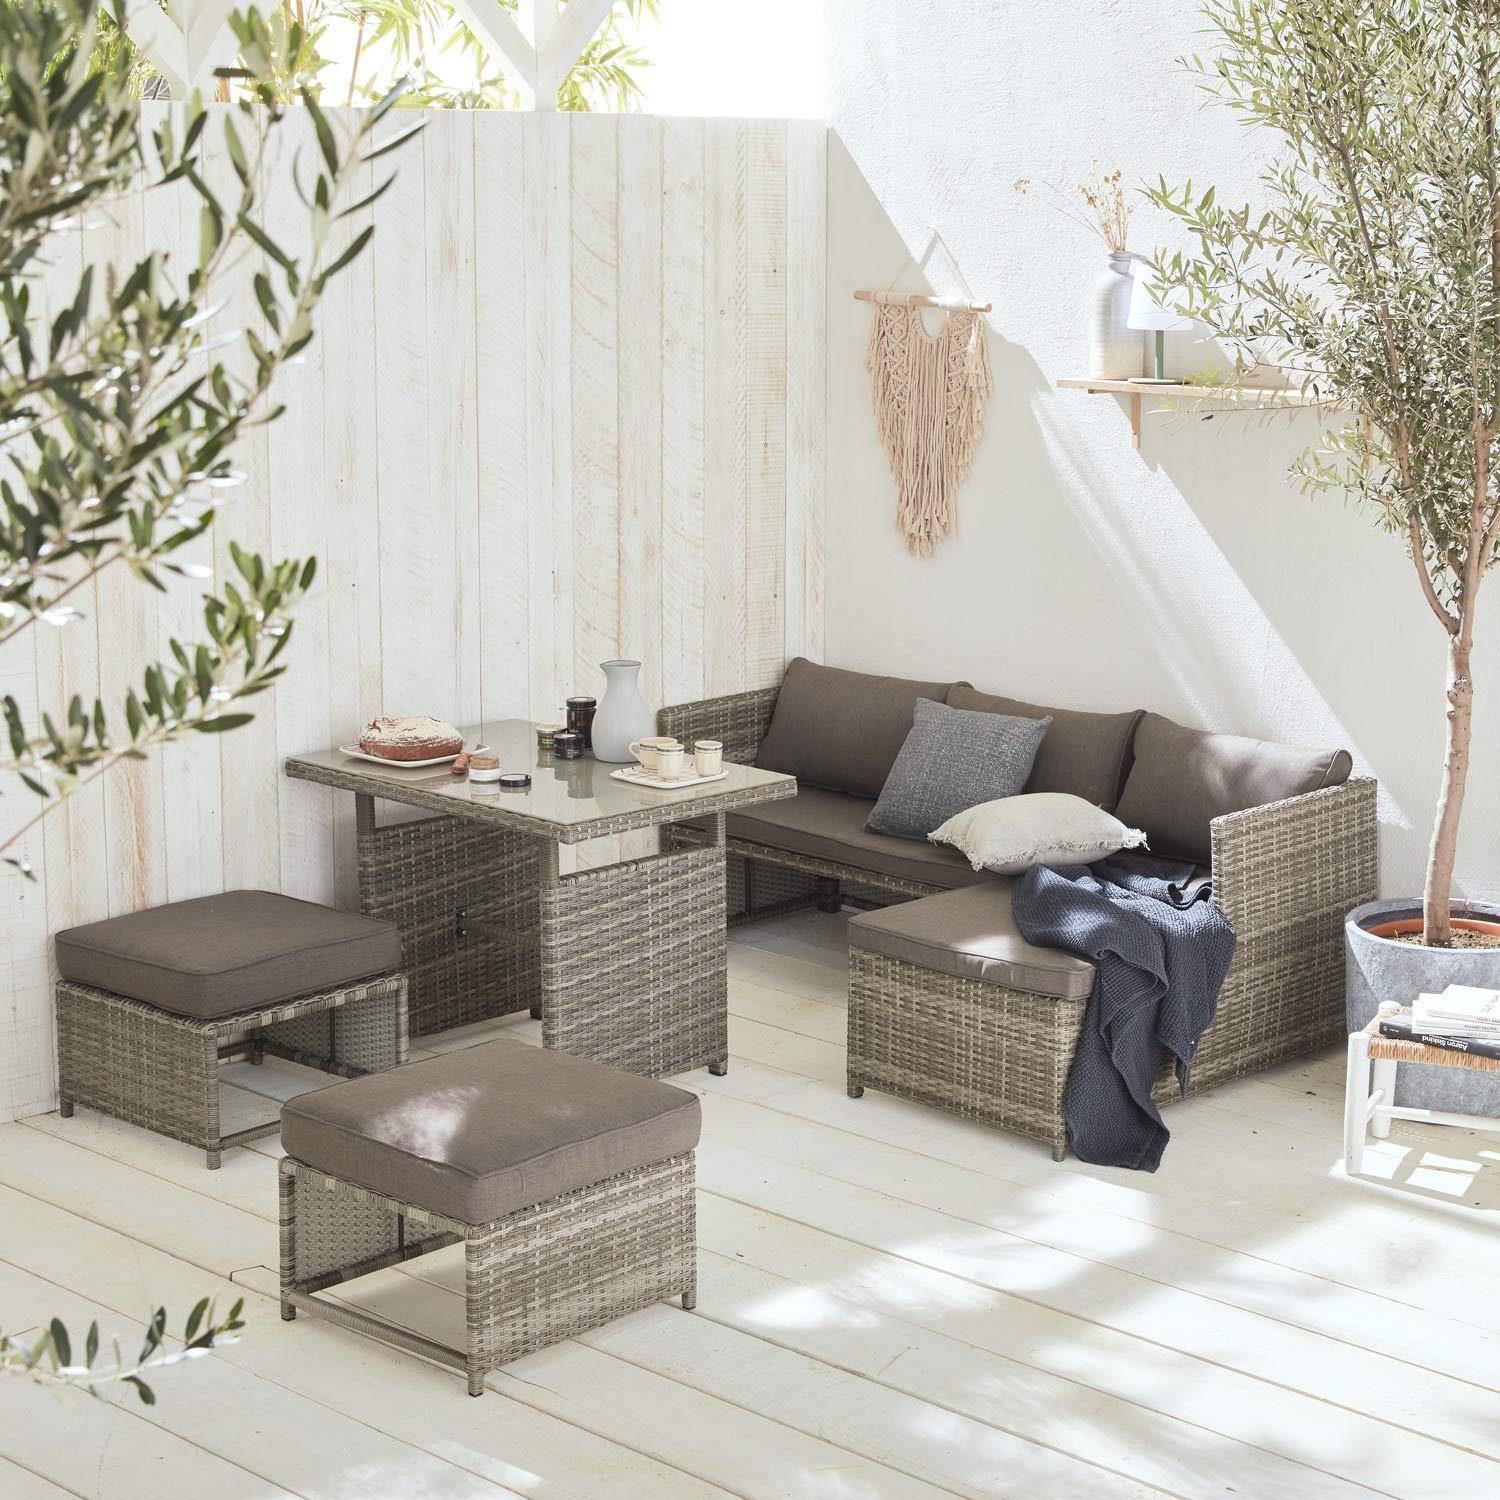 Gartenmöbel-Set für 6 Personen - Reggiano - Grautöne, grau melierte Kissen, Gartentisch mit Sofa, Chaiselongue und 2 verstaubaren Hockern Photo1